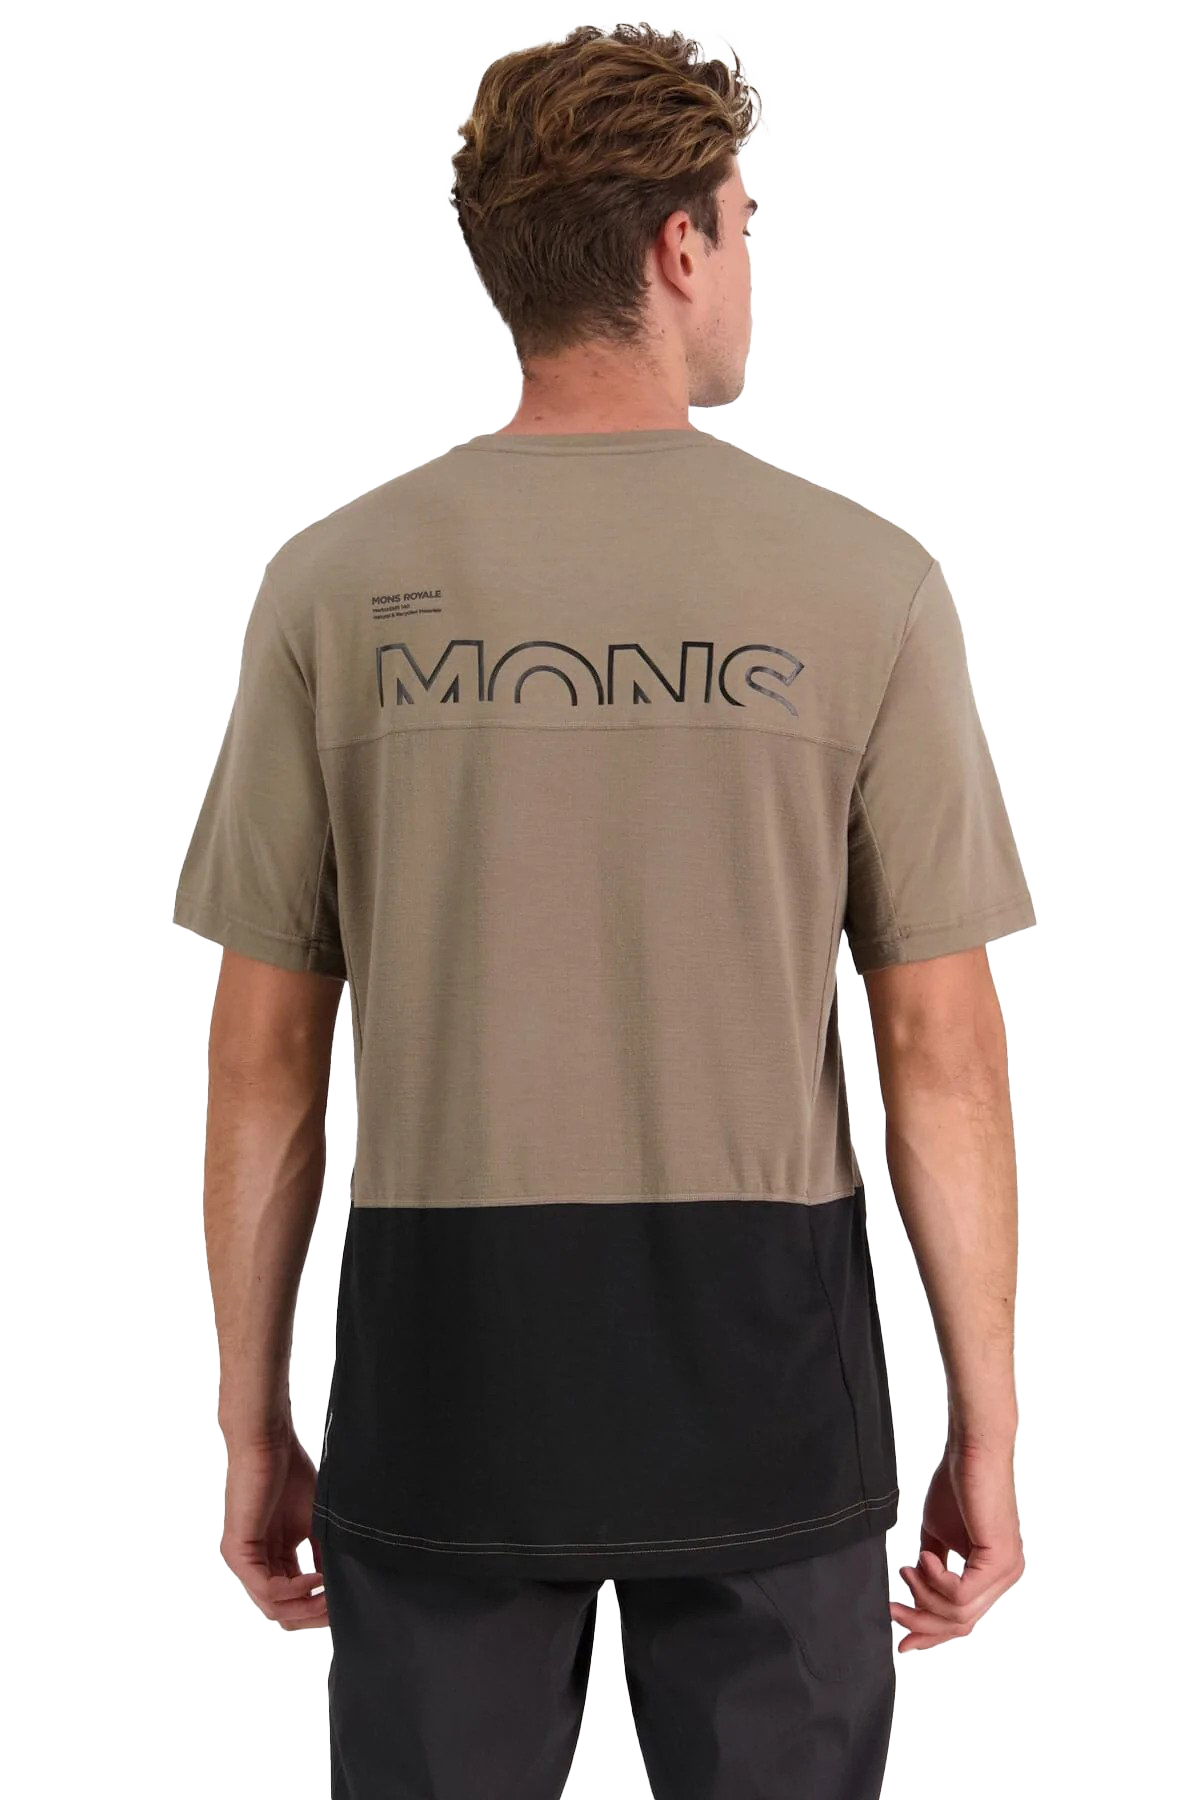 Mons Royale Men's Tarn Merino Shift T-Shirt